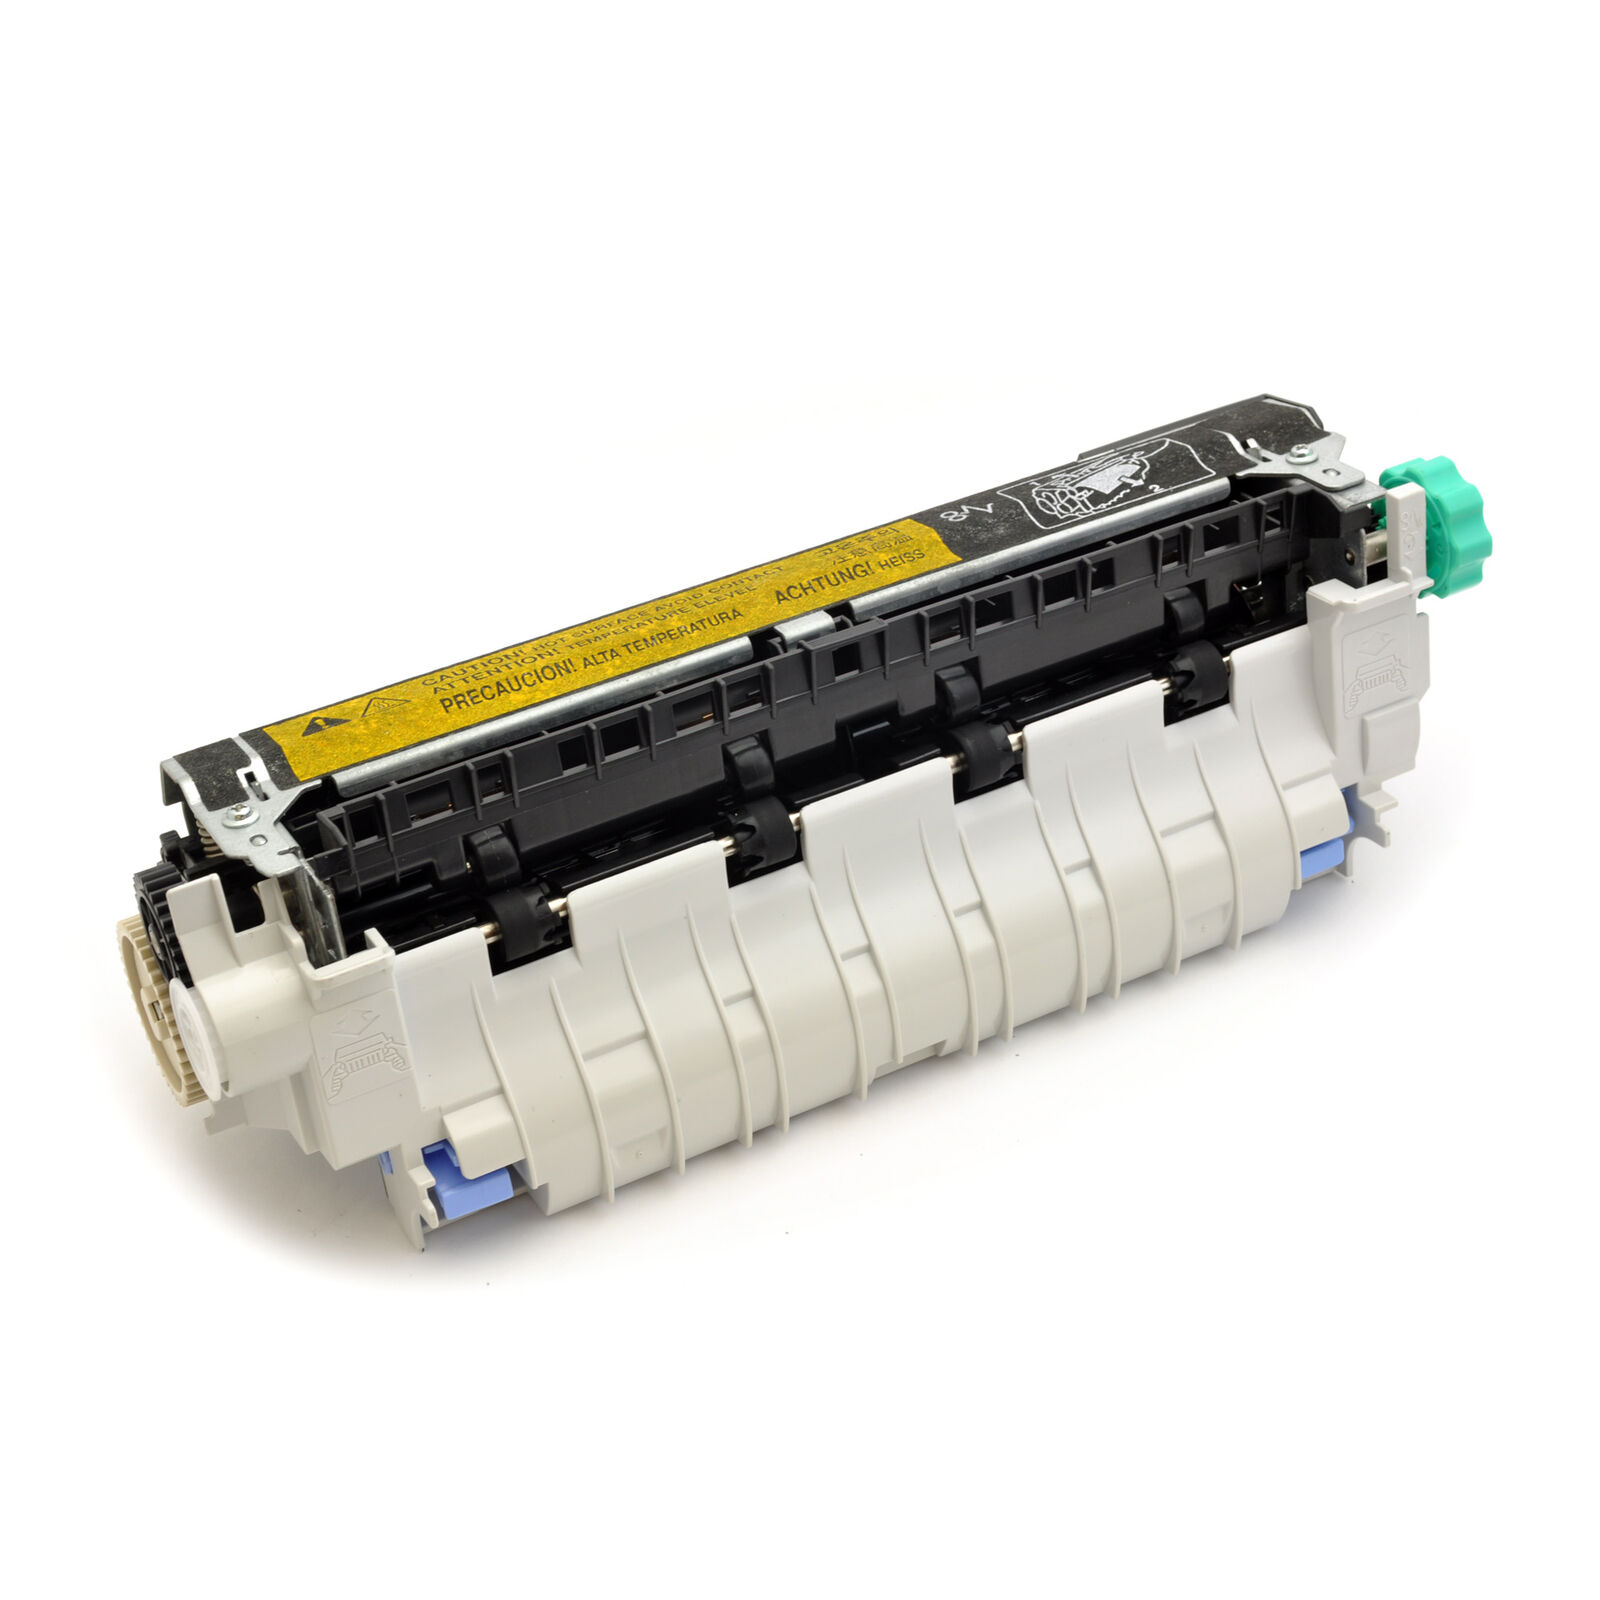 Printel RM1-0013-000 Fuser Assembly (110V) for HP LaserJet 4200